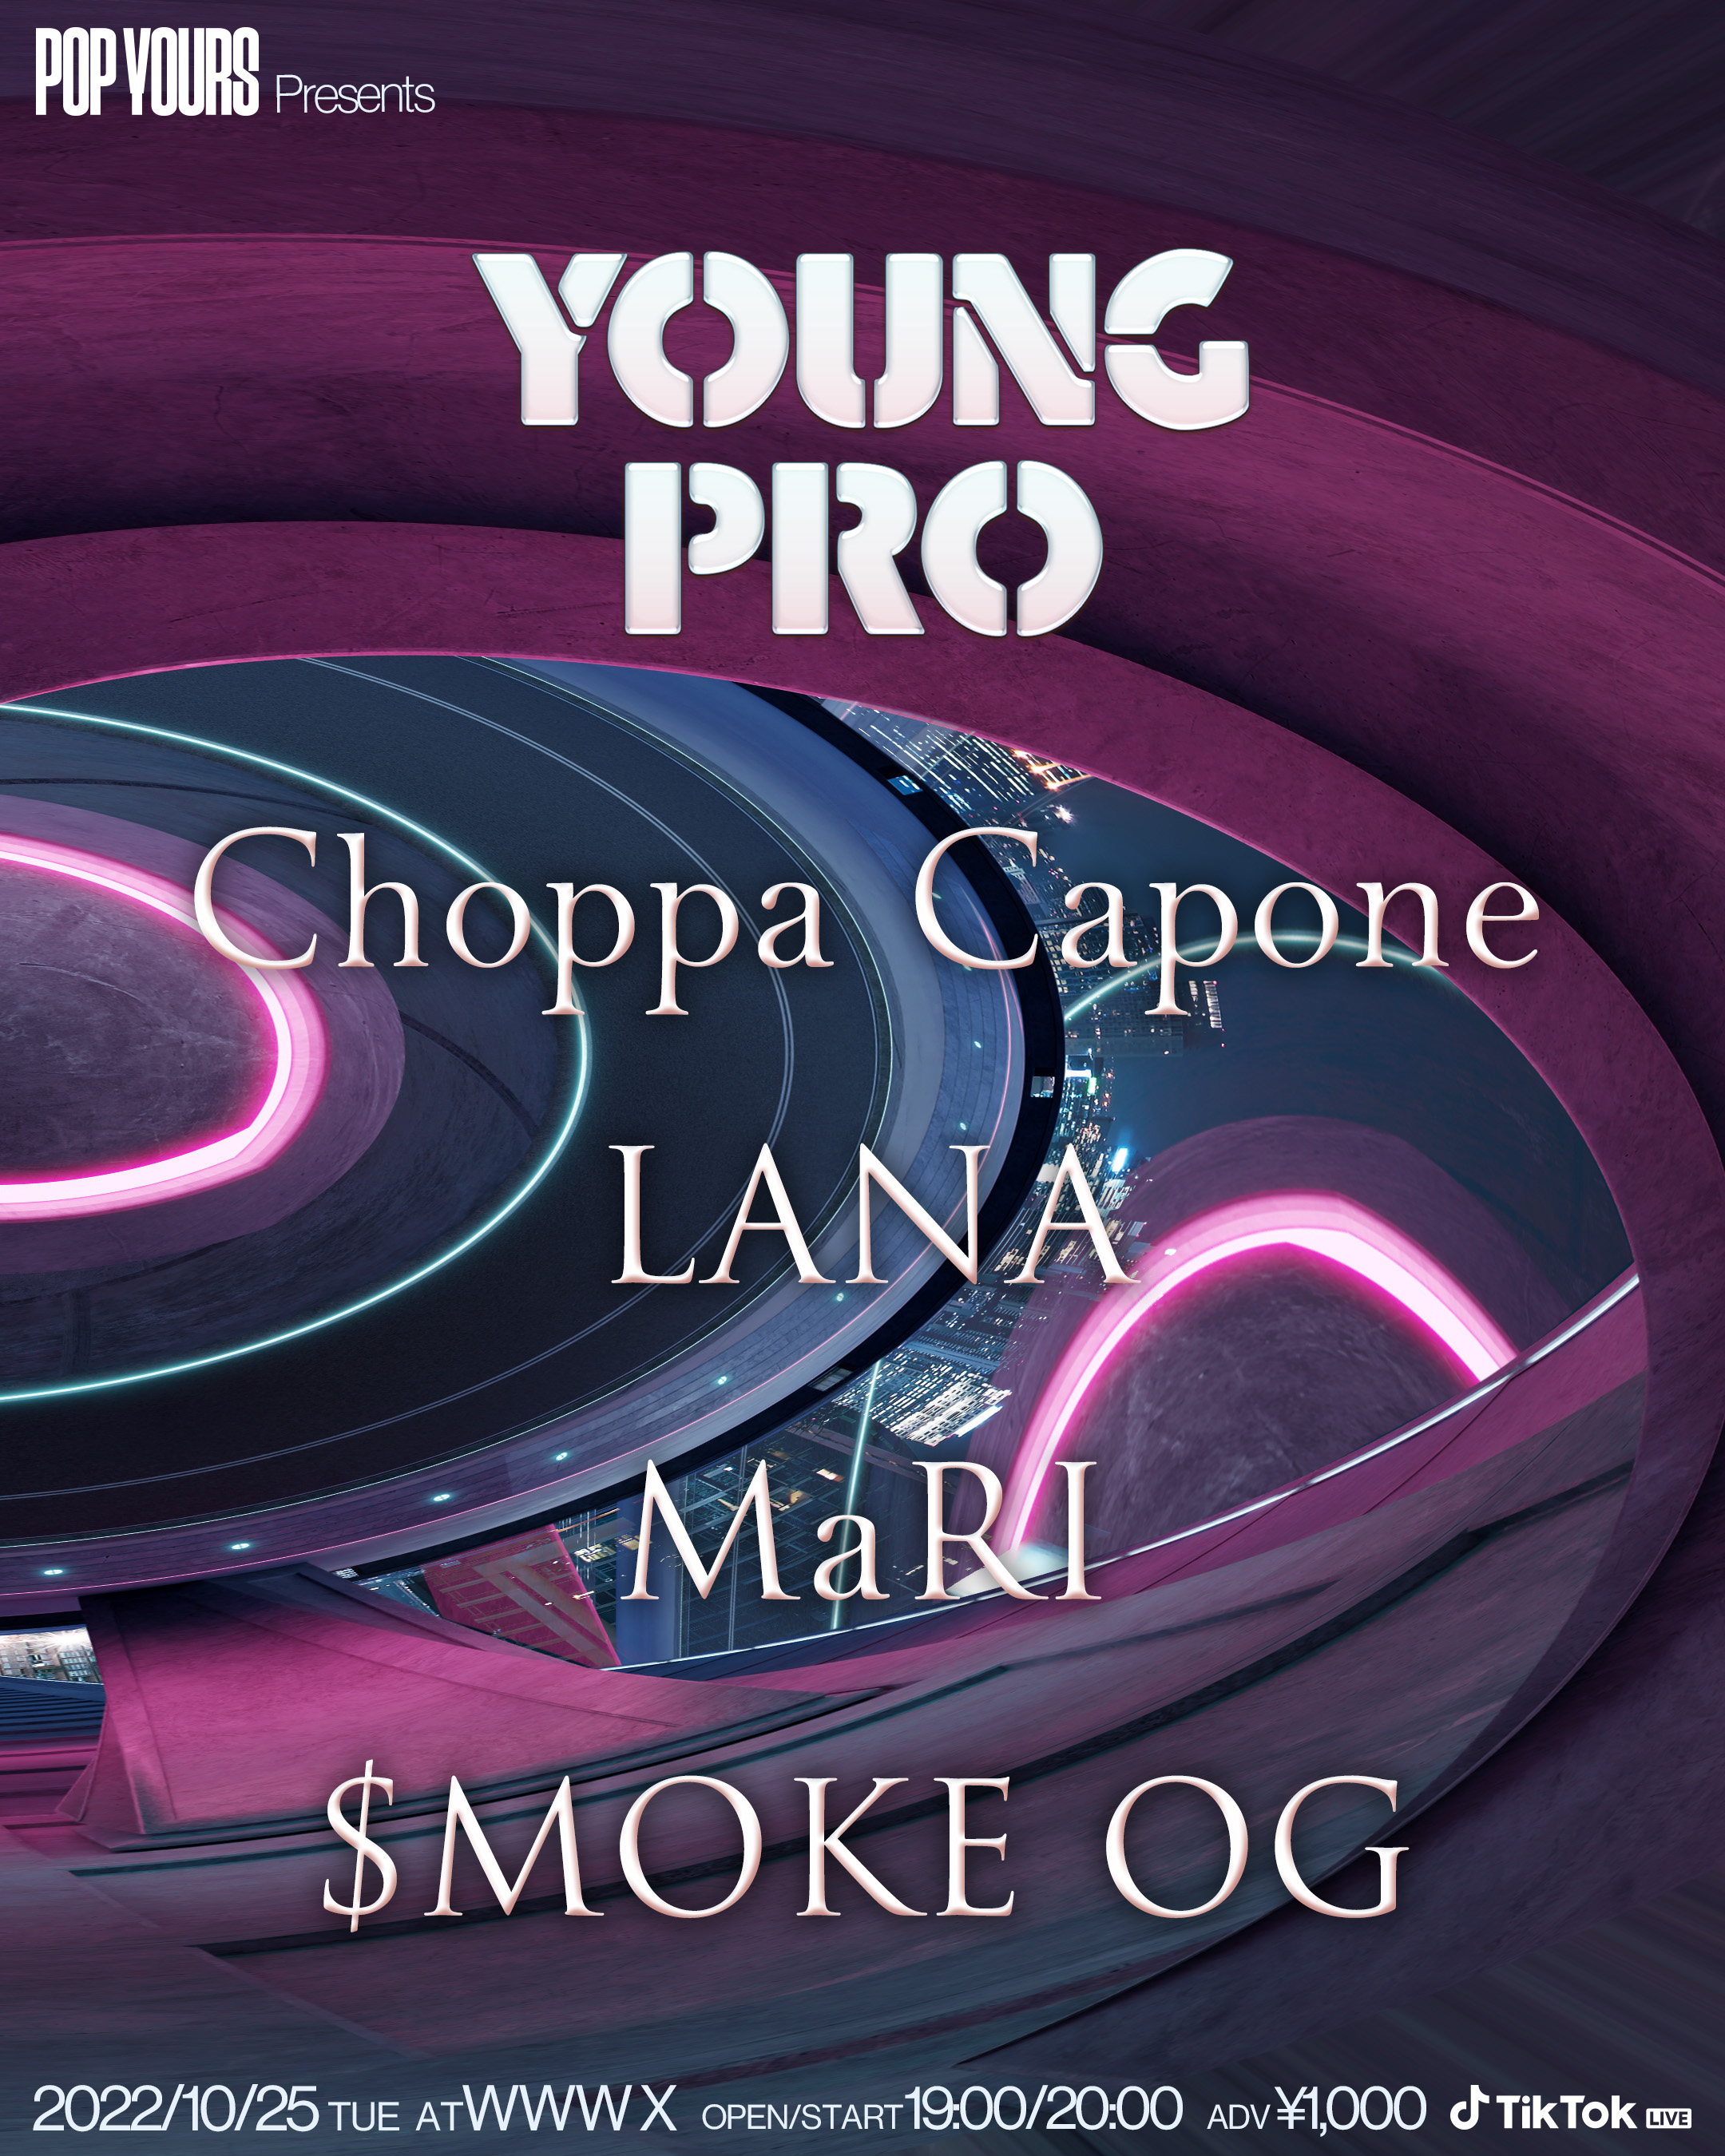 Choppa Capone / LANA / MaRI / $MOKE OG